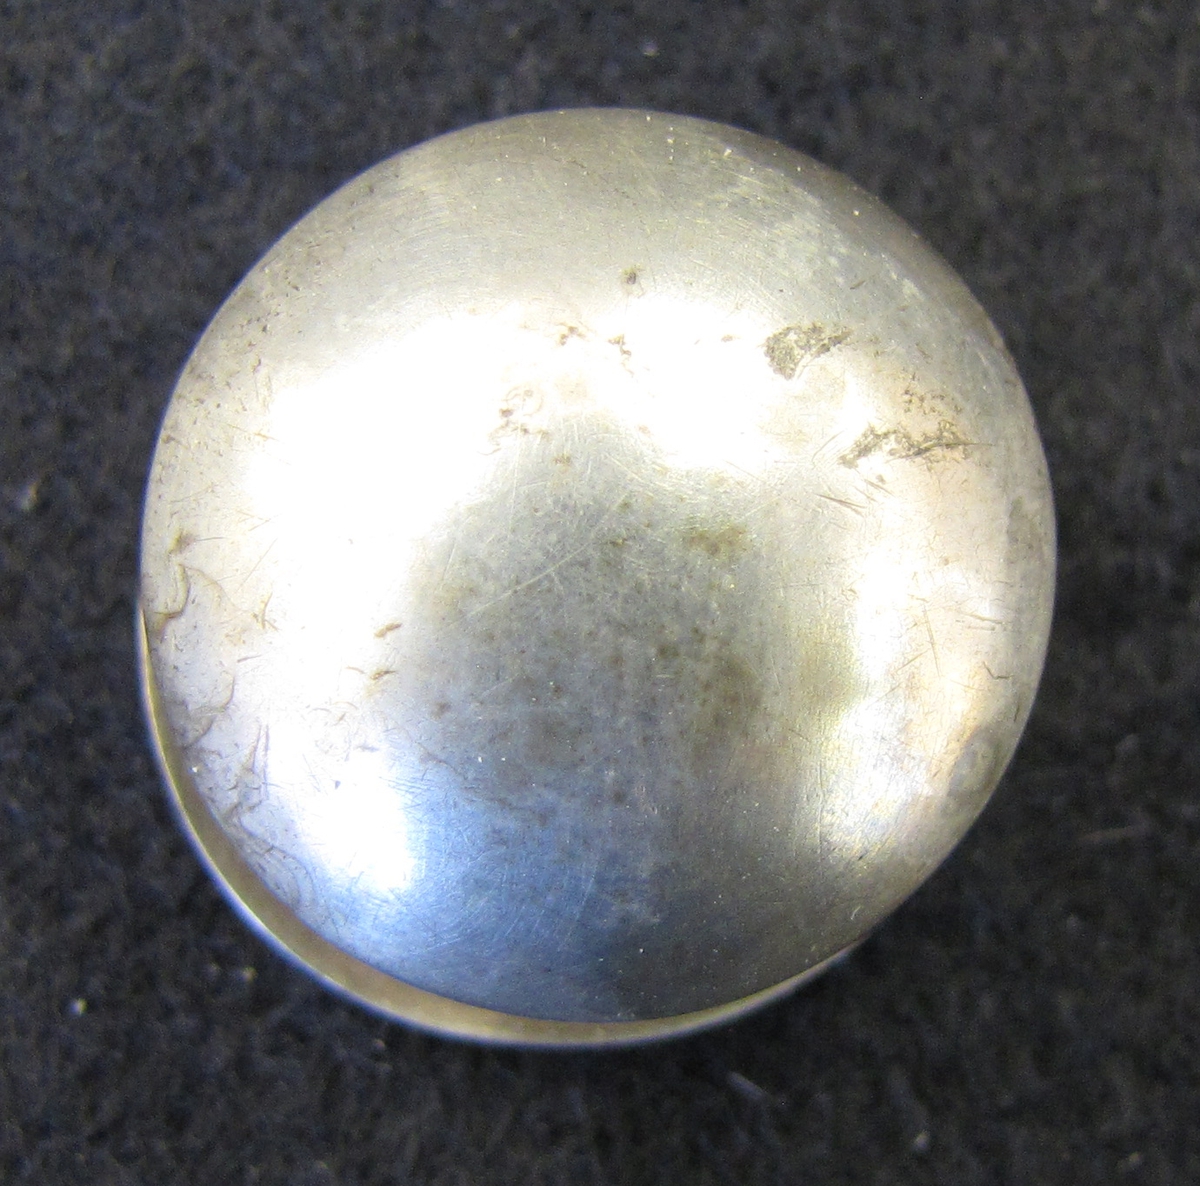 Allmogeknapp med halvrunt, helt slätt, huvud. Knappen är fästad i en välvd rund bottenplatta och fungerar likt en manschettknapp.

Stämplad AS, men då ett stort antal silversmeder under 17-1800-talet stämplade med dessa initialer har någon tillverkare till denna knapp ej med säkerhet kunnat fastställas.